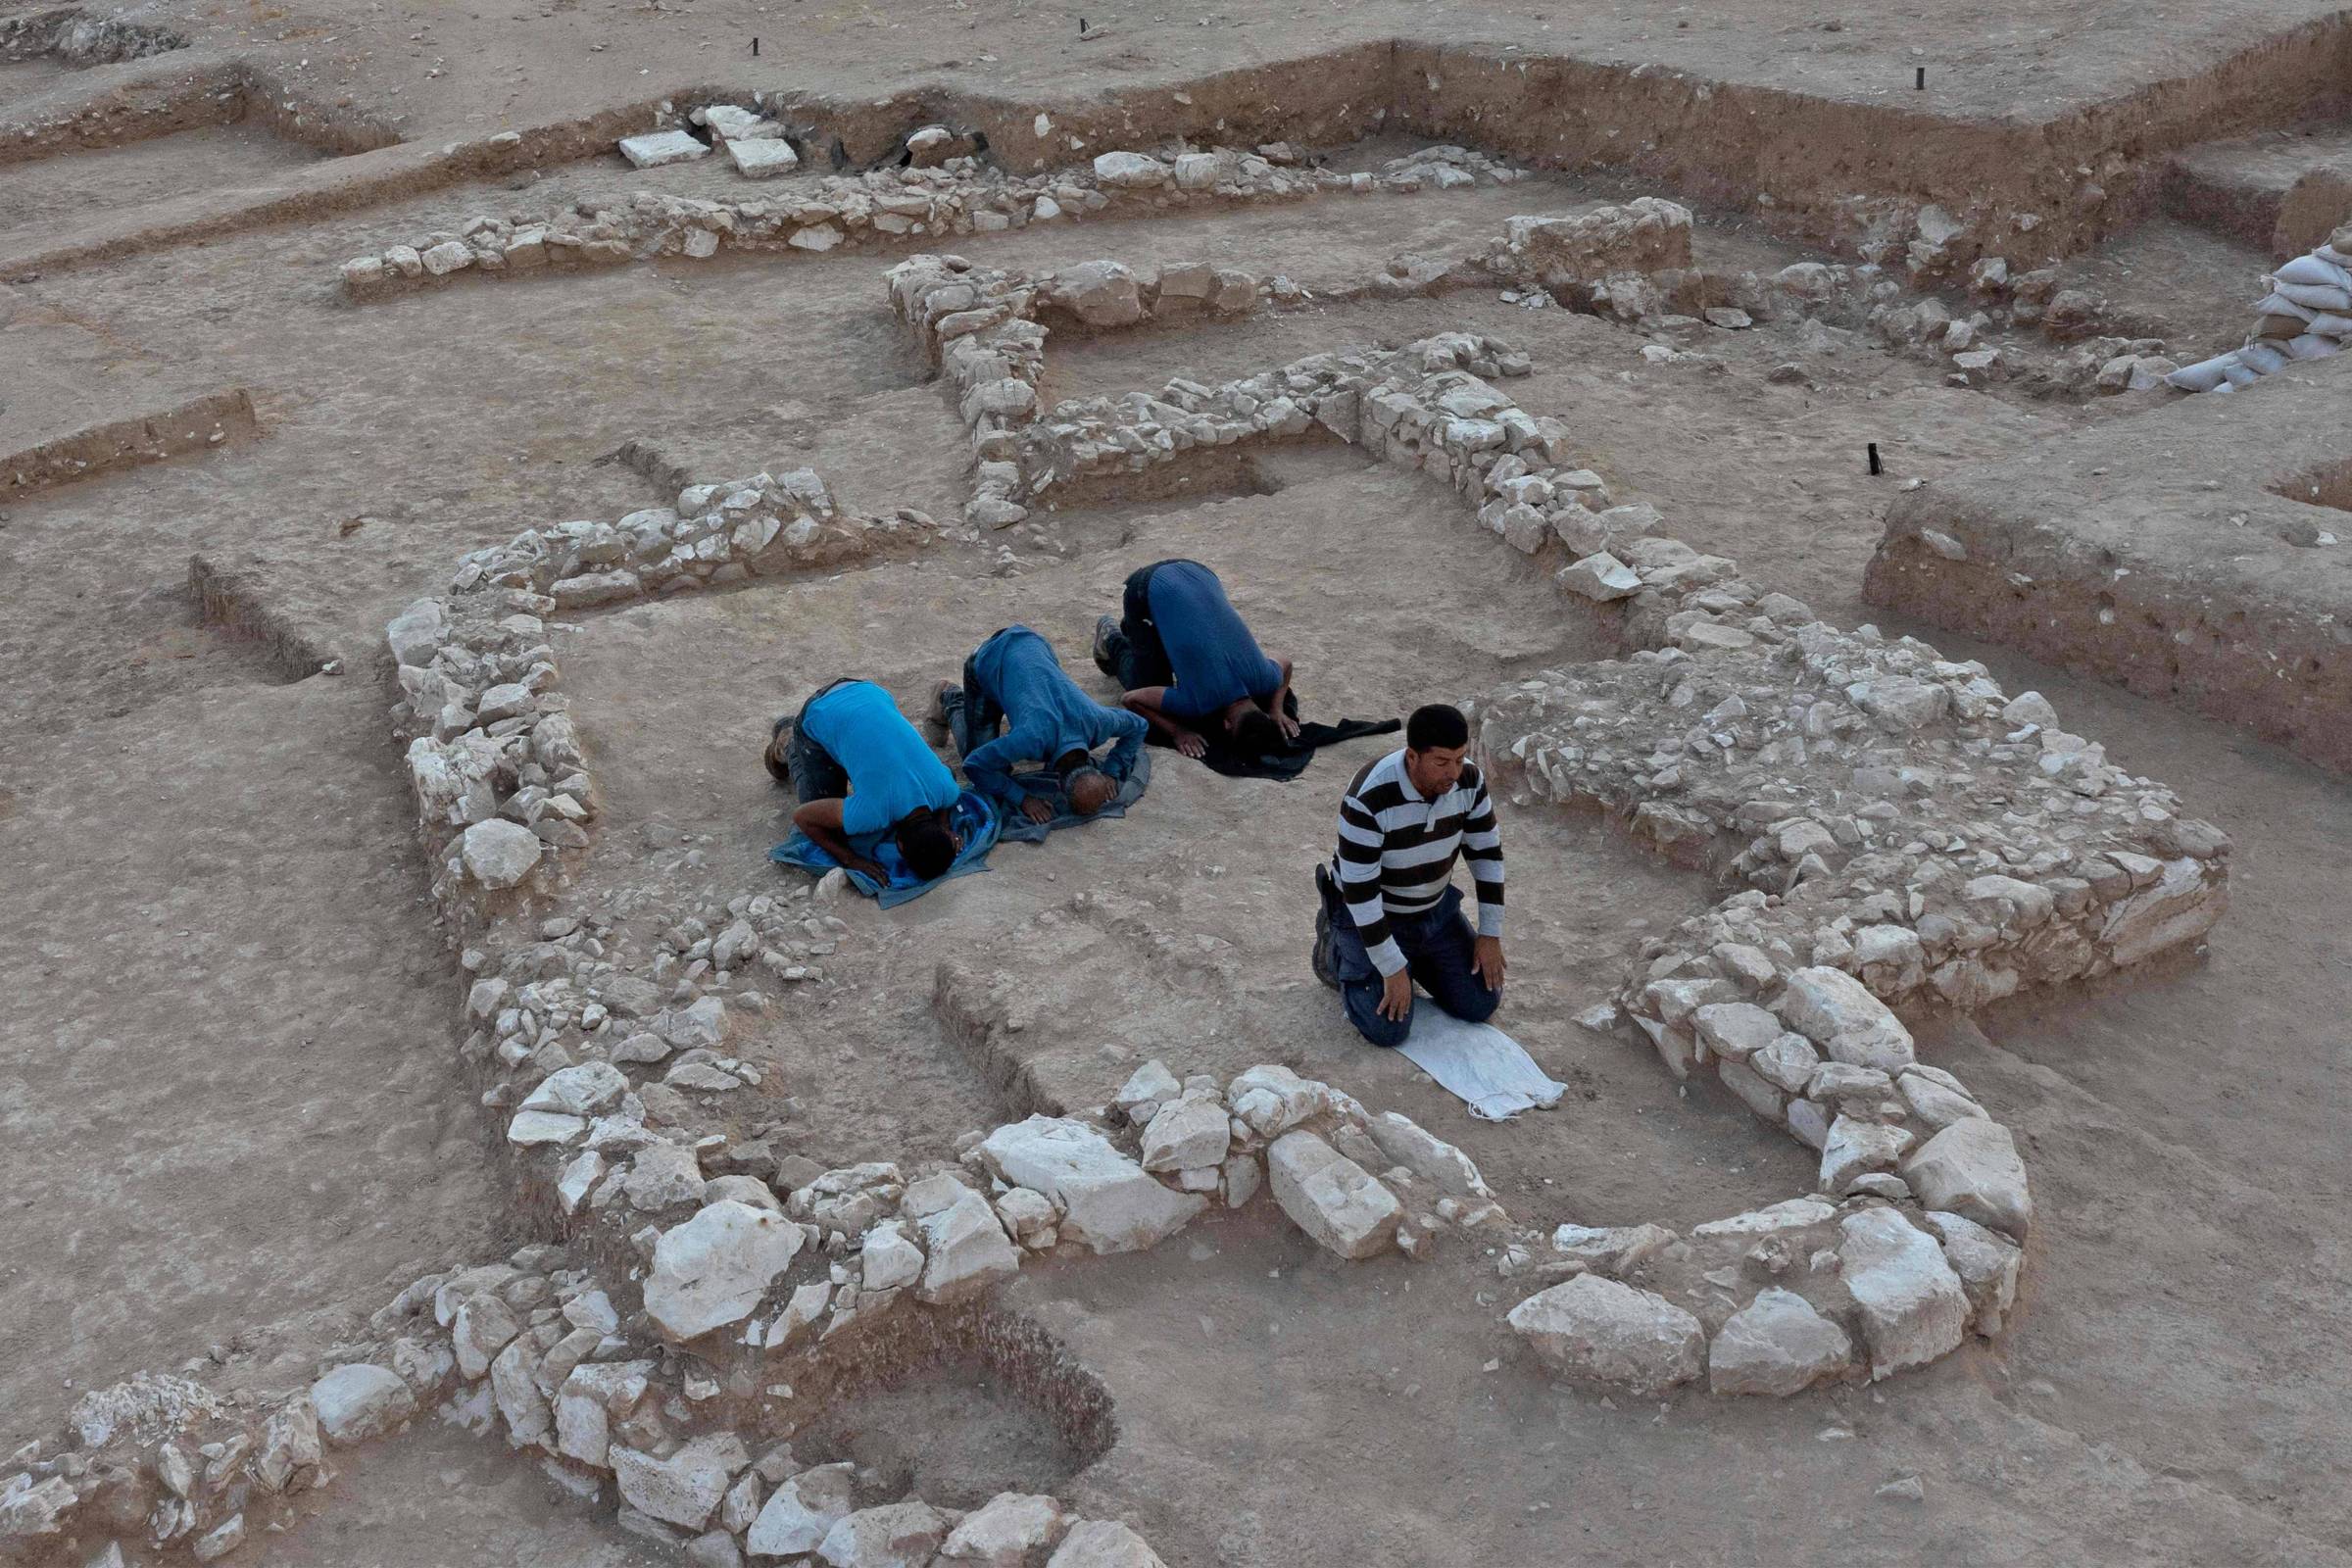 Mezquita de 1.200 años descubierta en Israel – 23/06/2022 – Ciencia